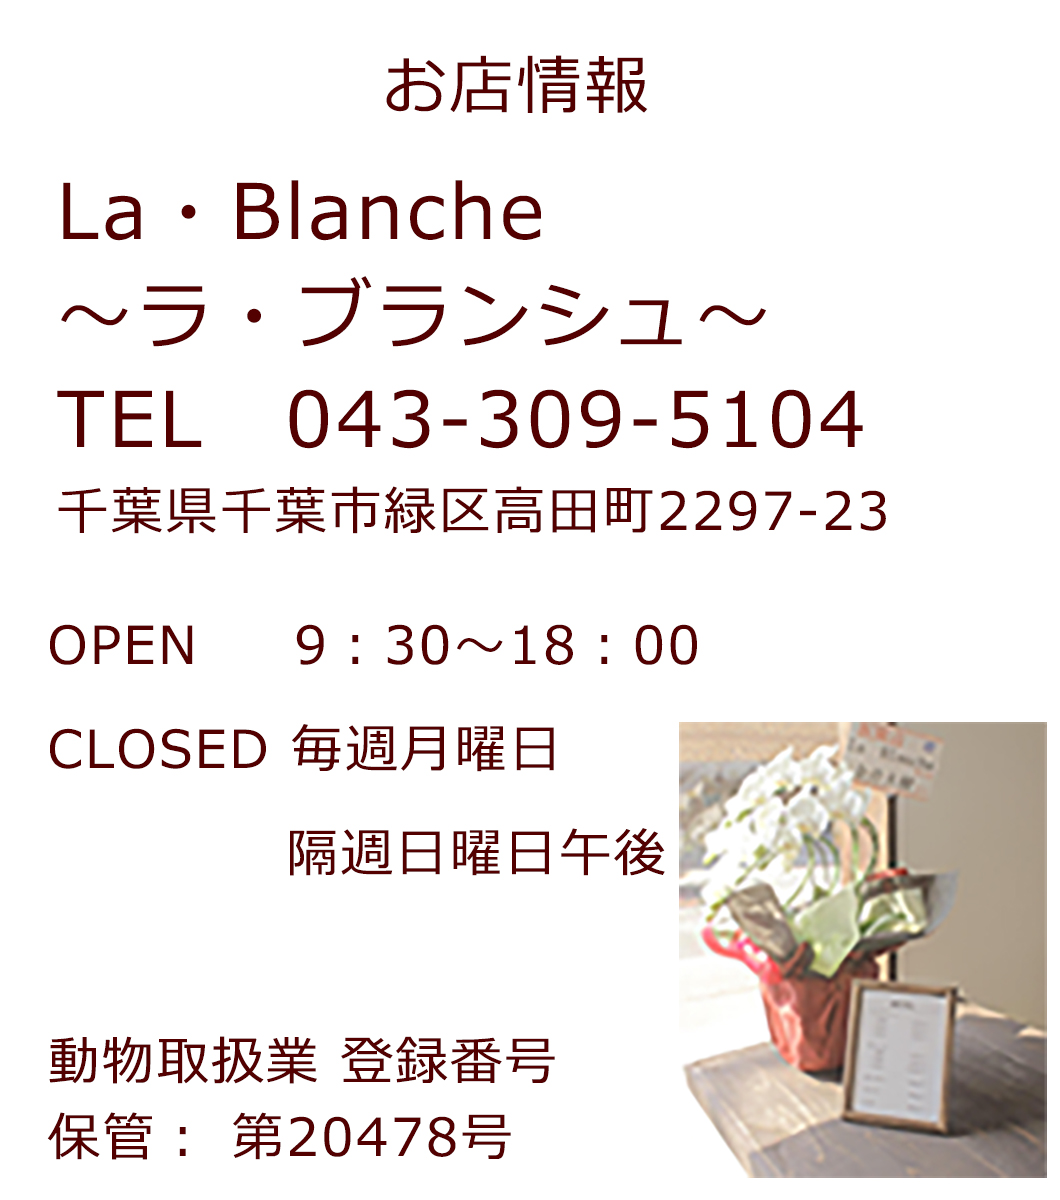 千葉県緑区にあるドッグサロン、ラブランシュのお店情報です